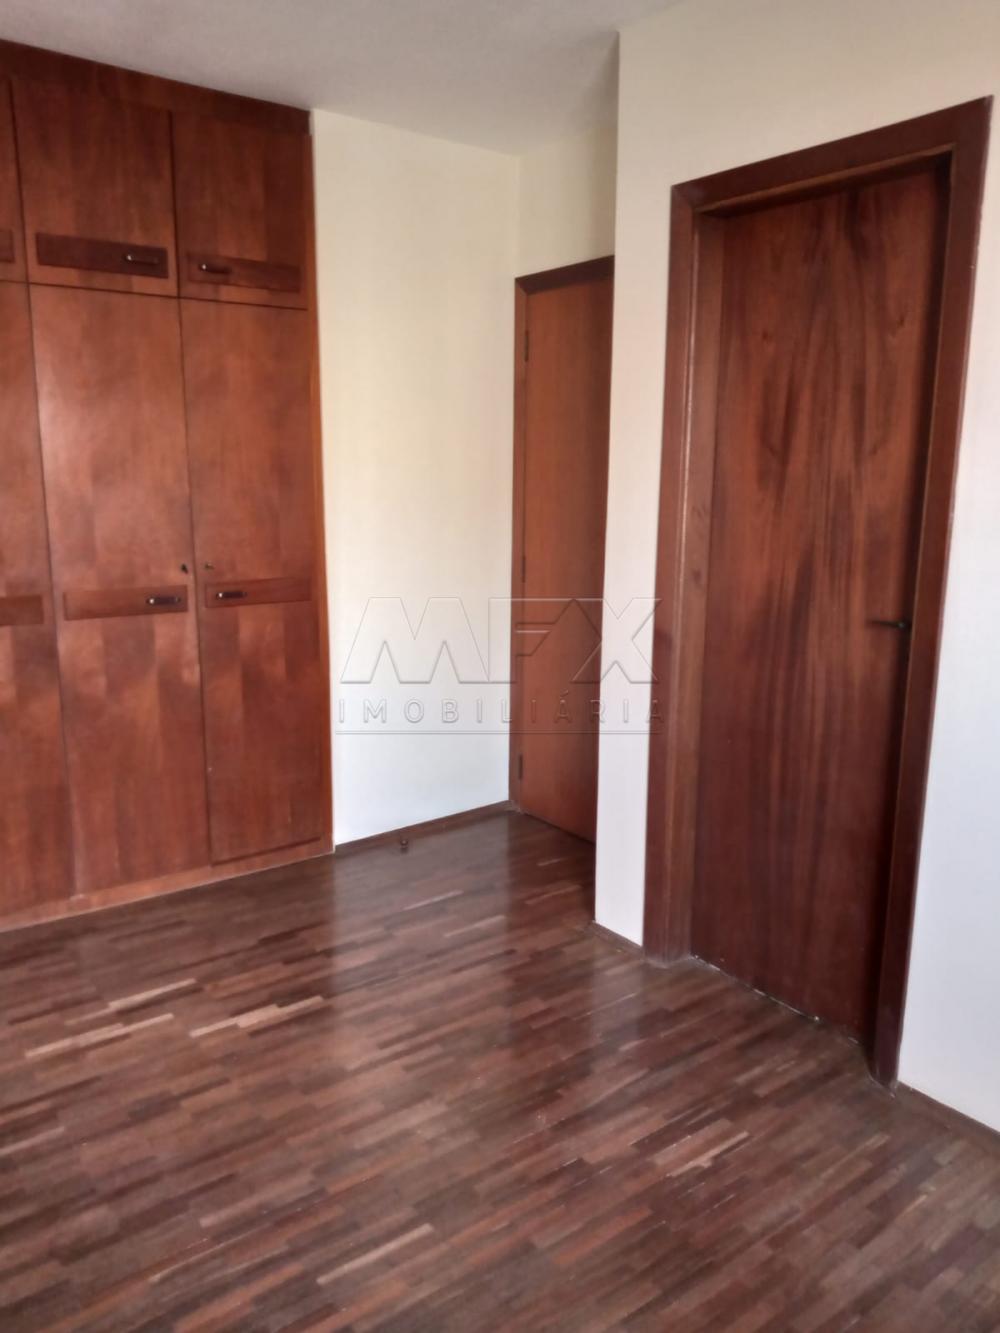 Comprar Apartamento / Padrão em Bauru R$ 550.000,00 - Foto 7